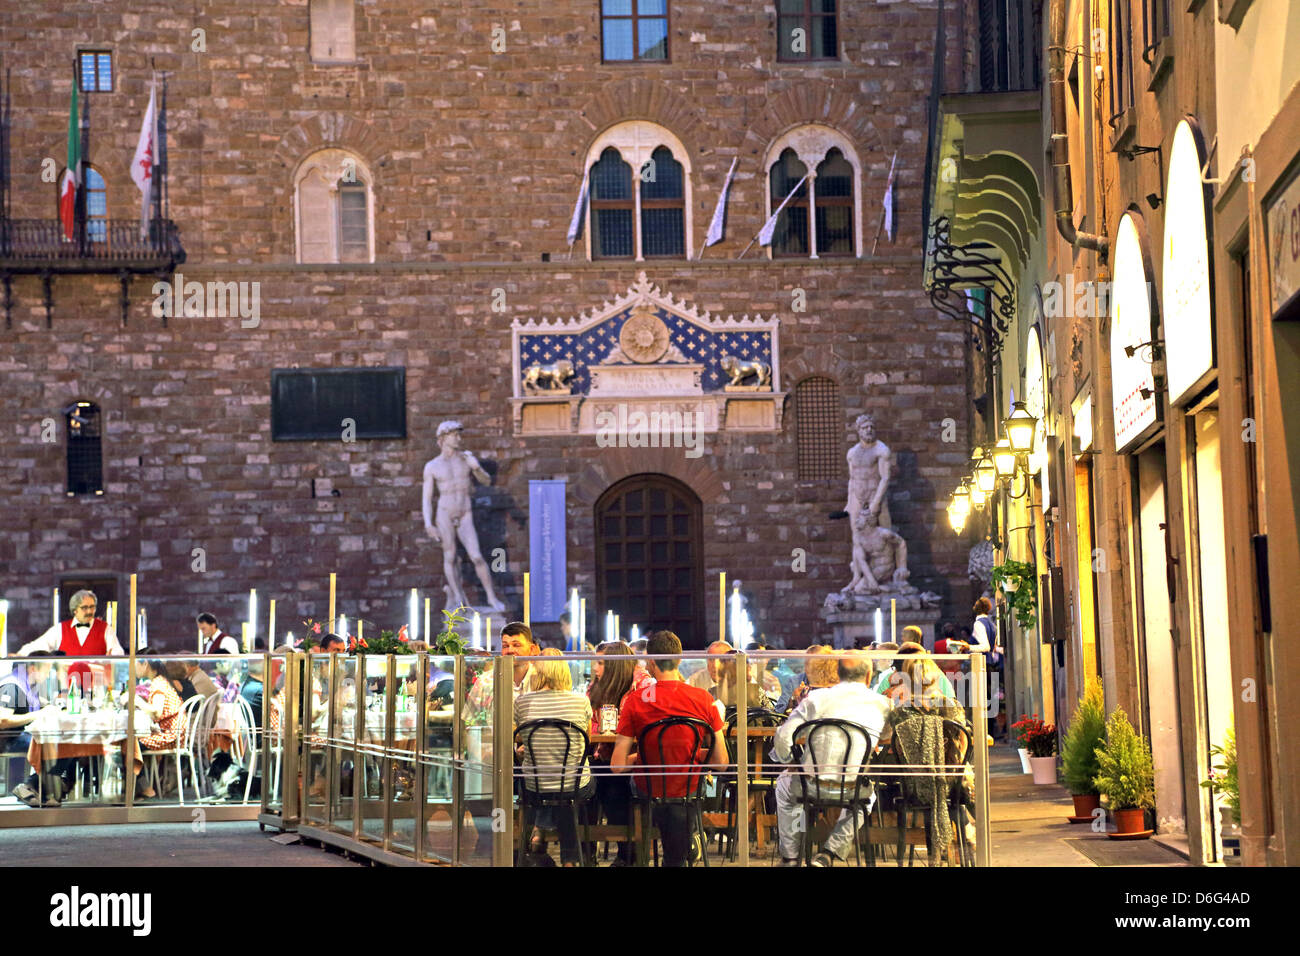 Restaurants at night in Piazza della Signoria Florence Italy. Palazzo Vecchio and a replica statue of David in the background. Stock Photo